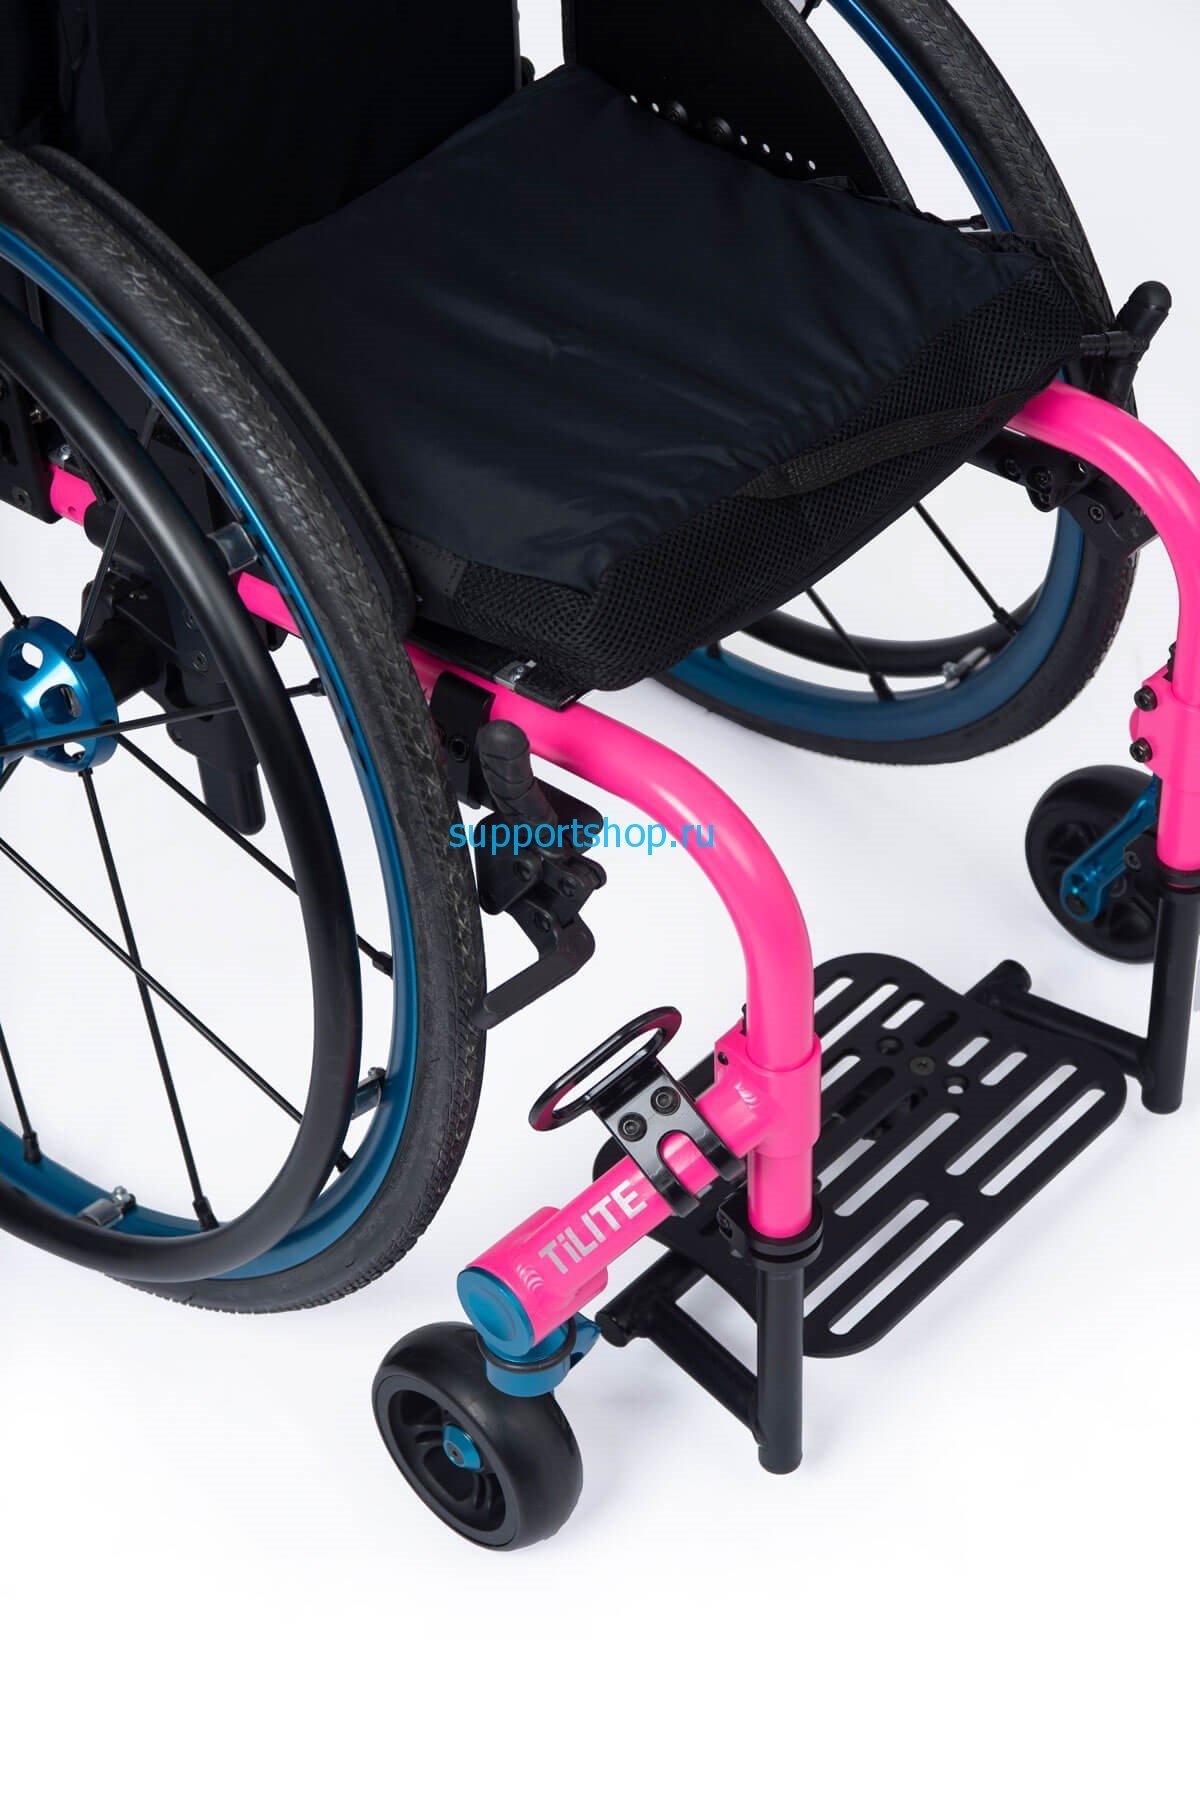 Детская активная инвалидная кресло-коляска TWIST (LY-170)